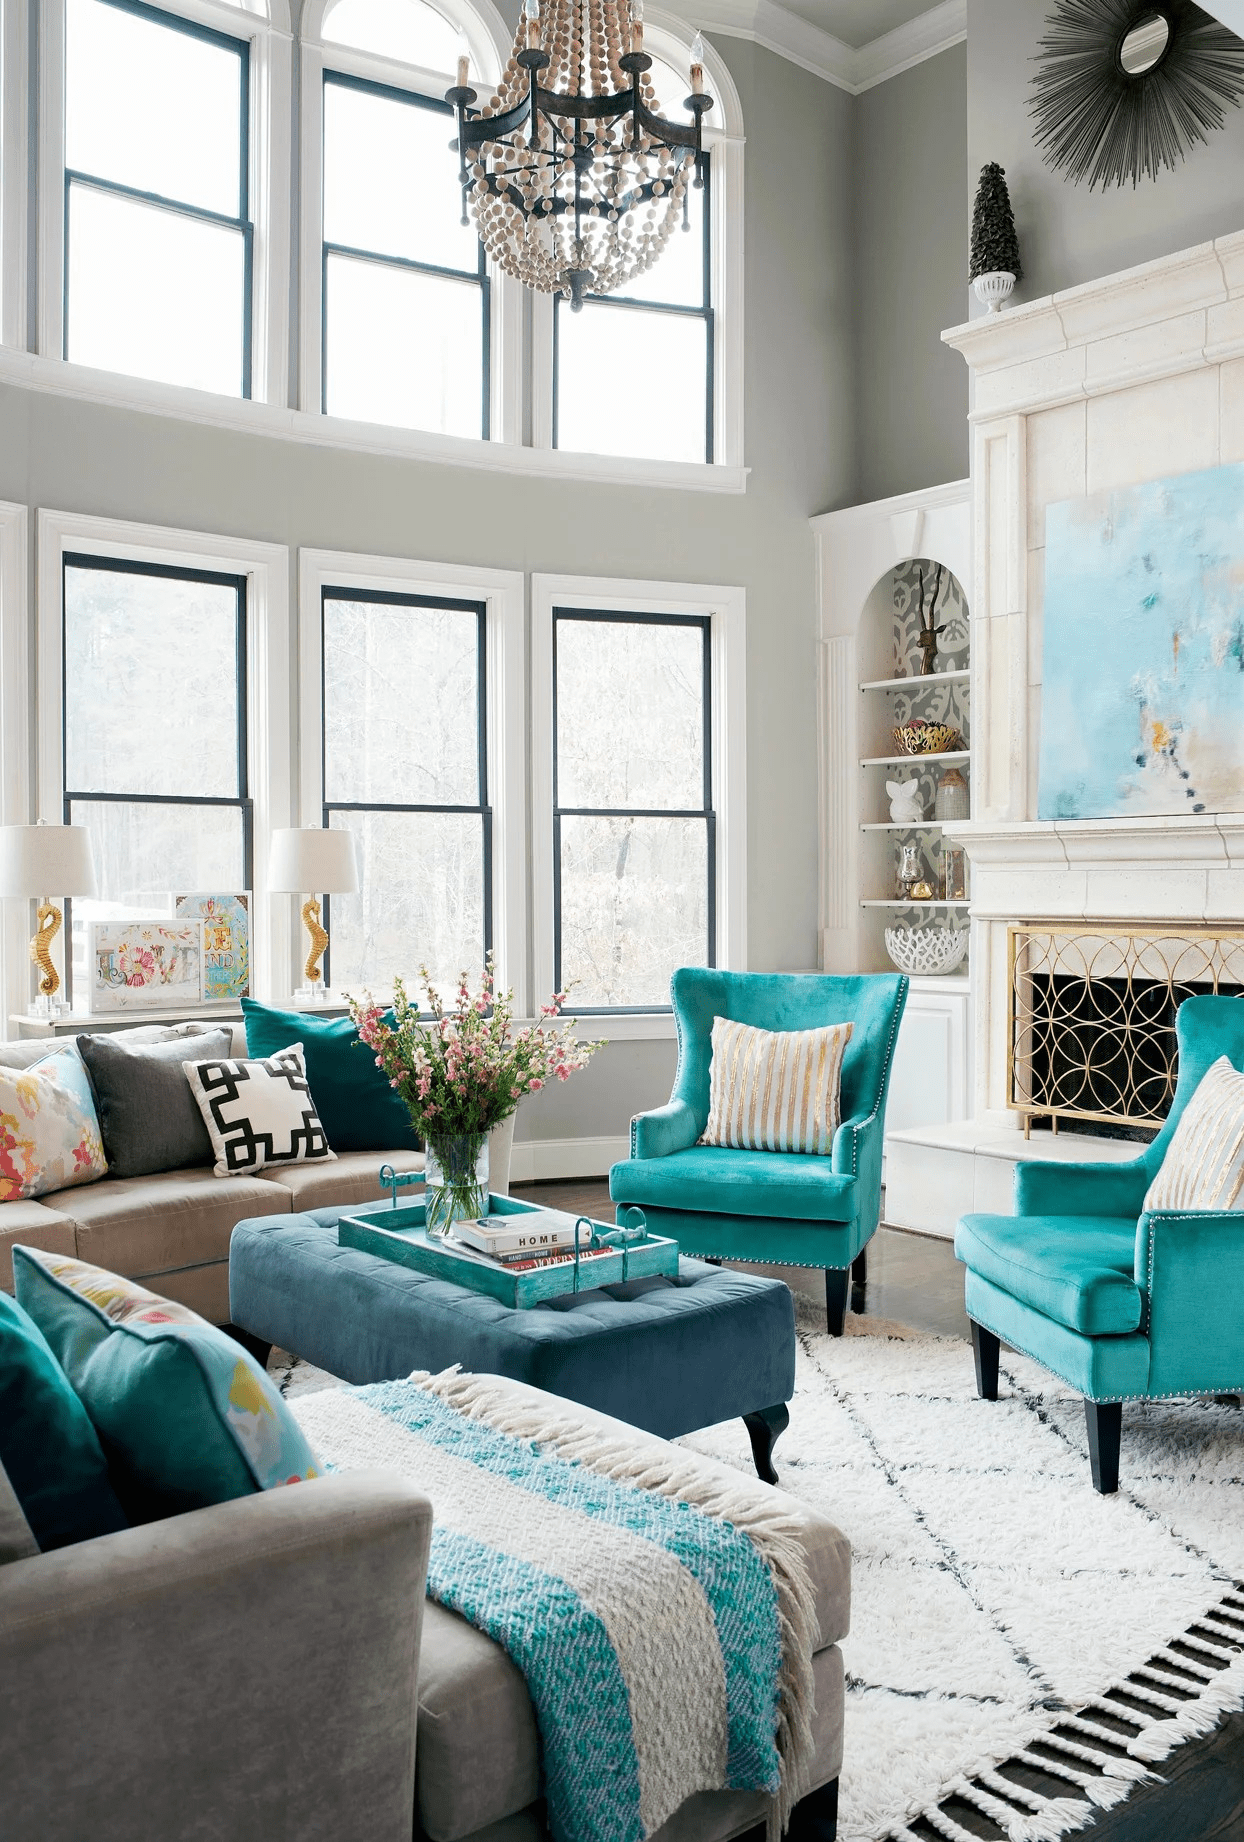 Sofa nhiều màu sắc tạo điểm nhấn nổi bật cho không gian sống hiện đại - Ảnh 1.